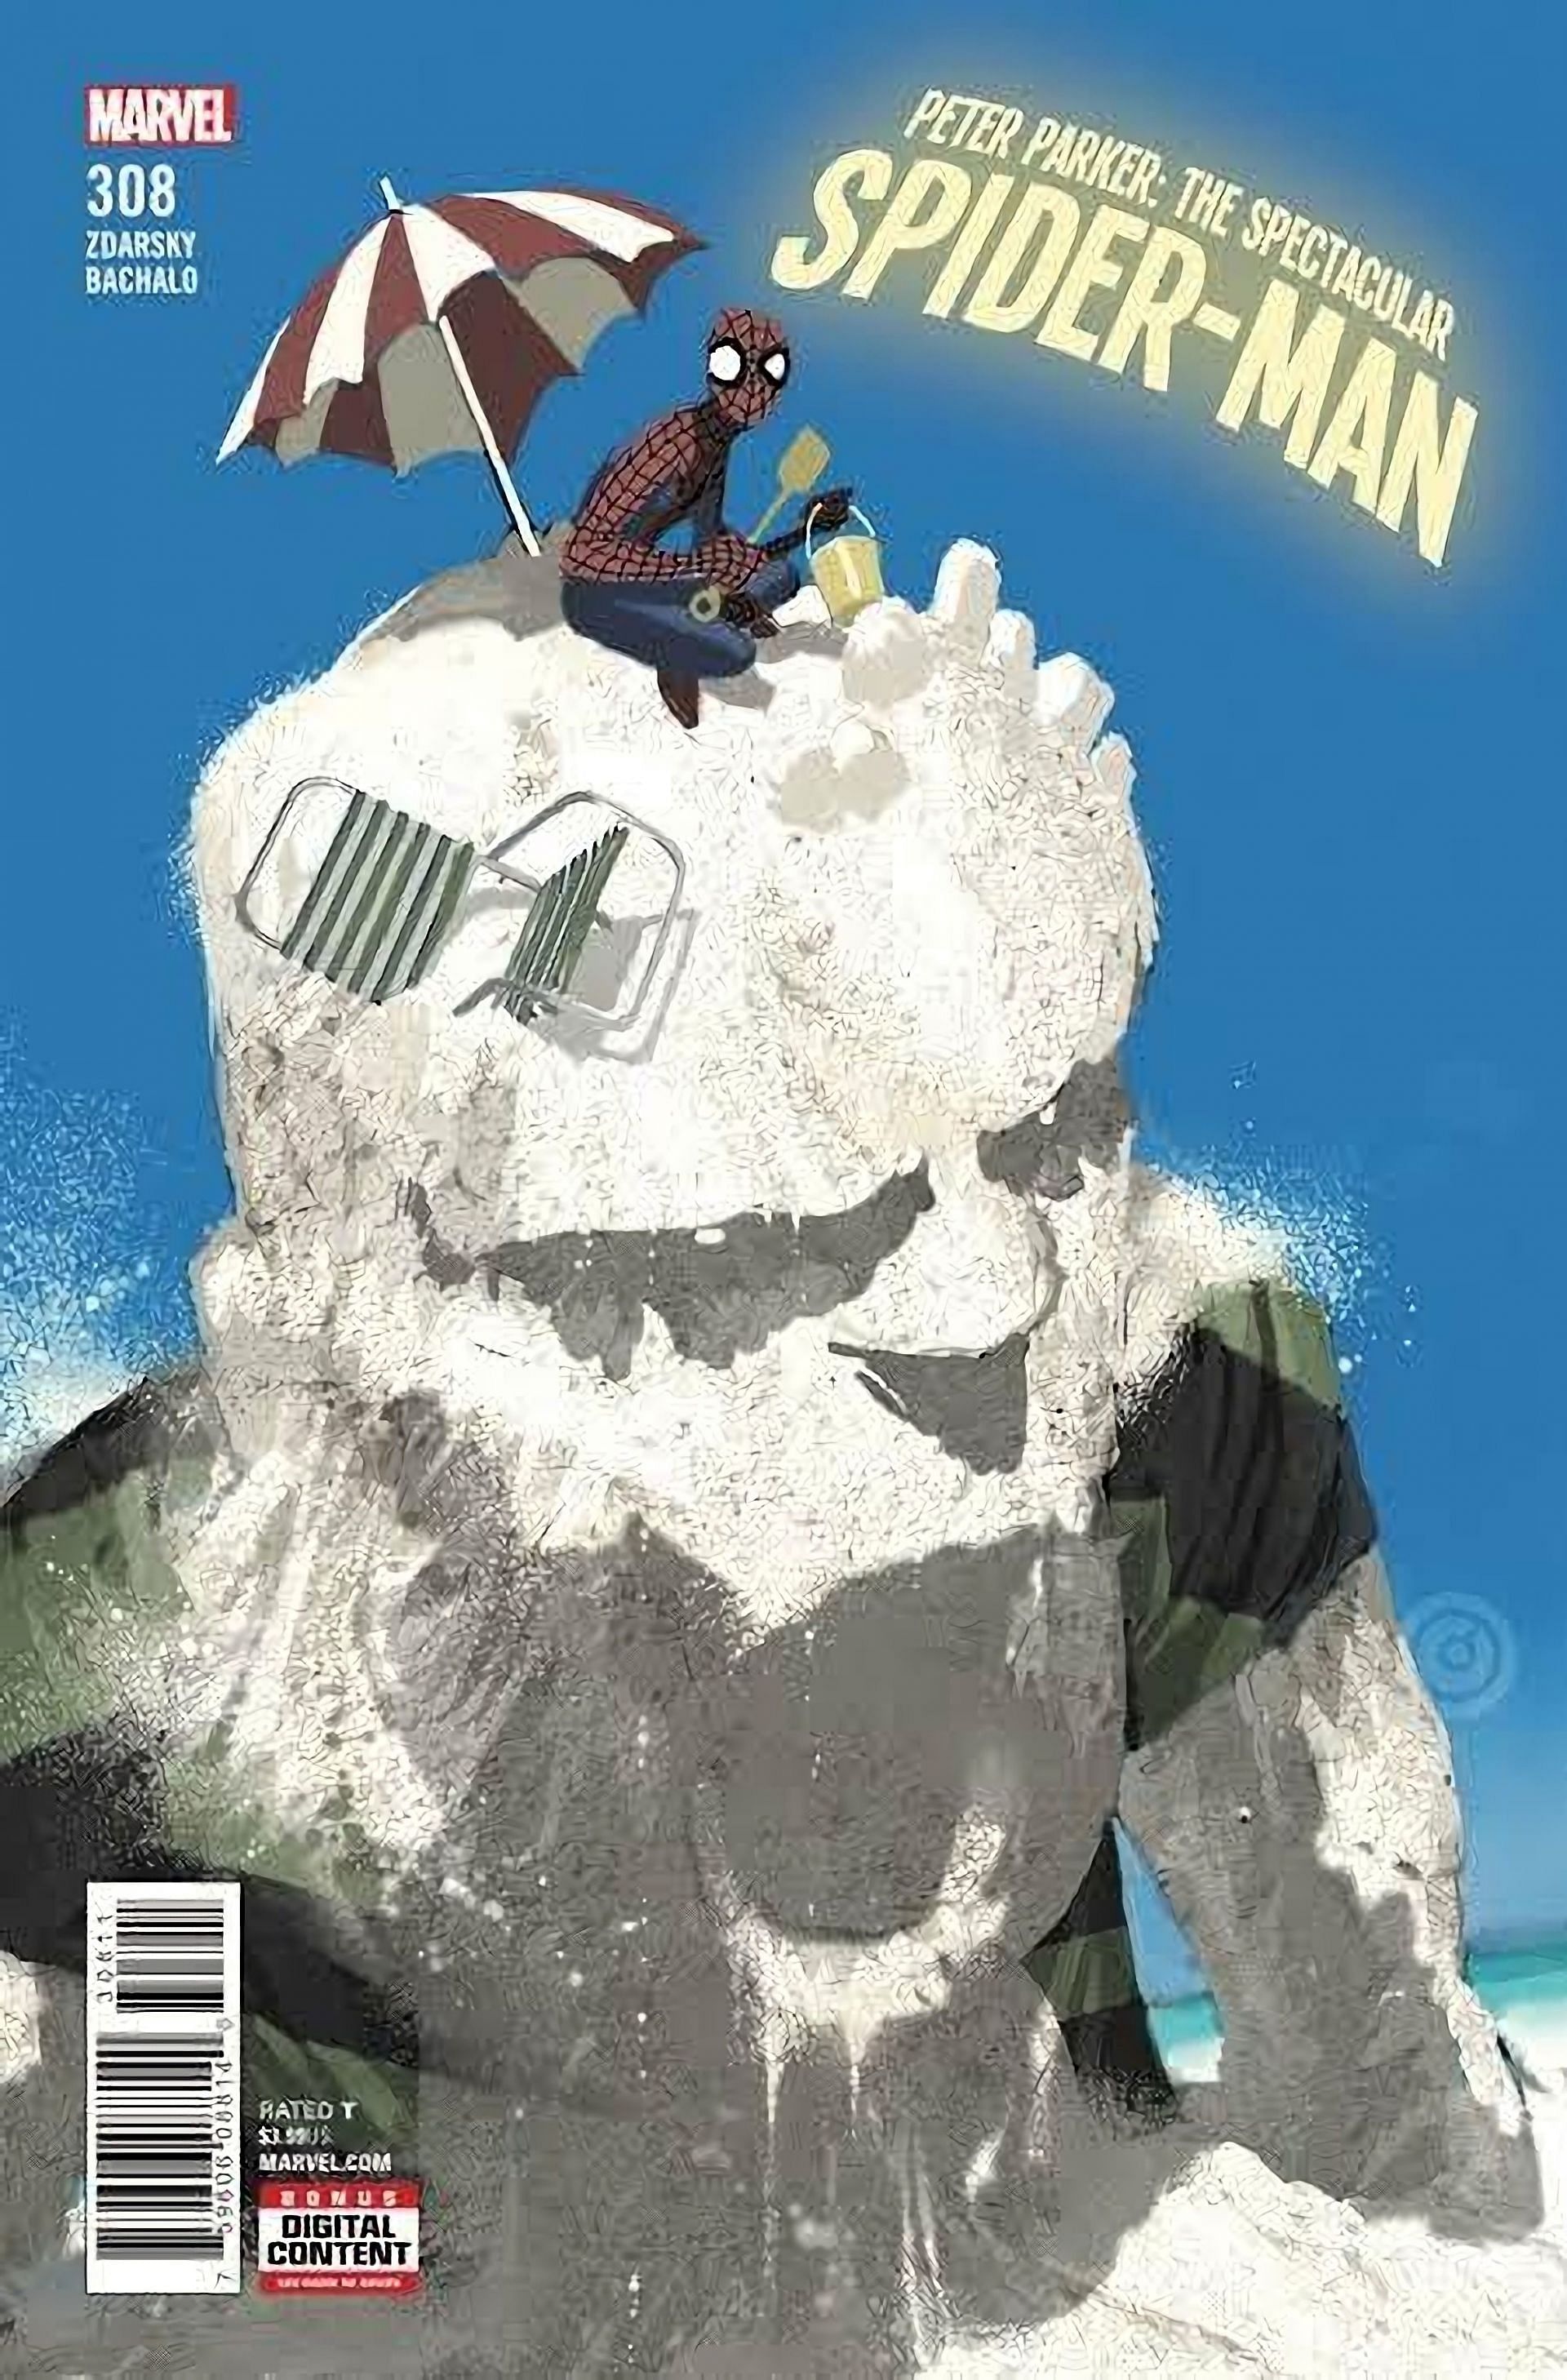 Web-Crawler and Sandman (Image via Marvel Comics)